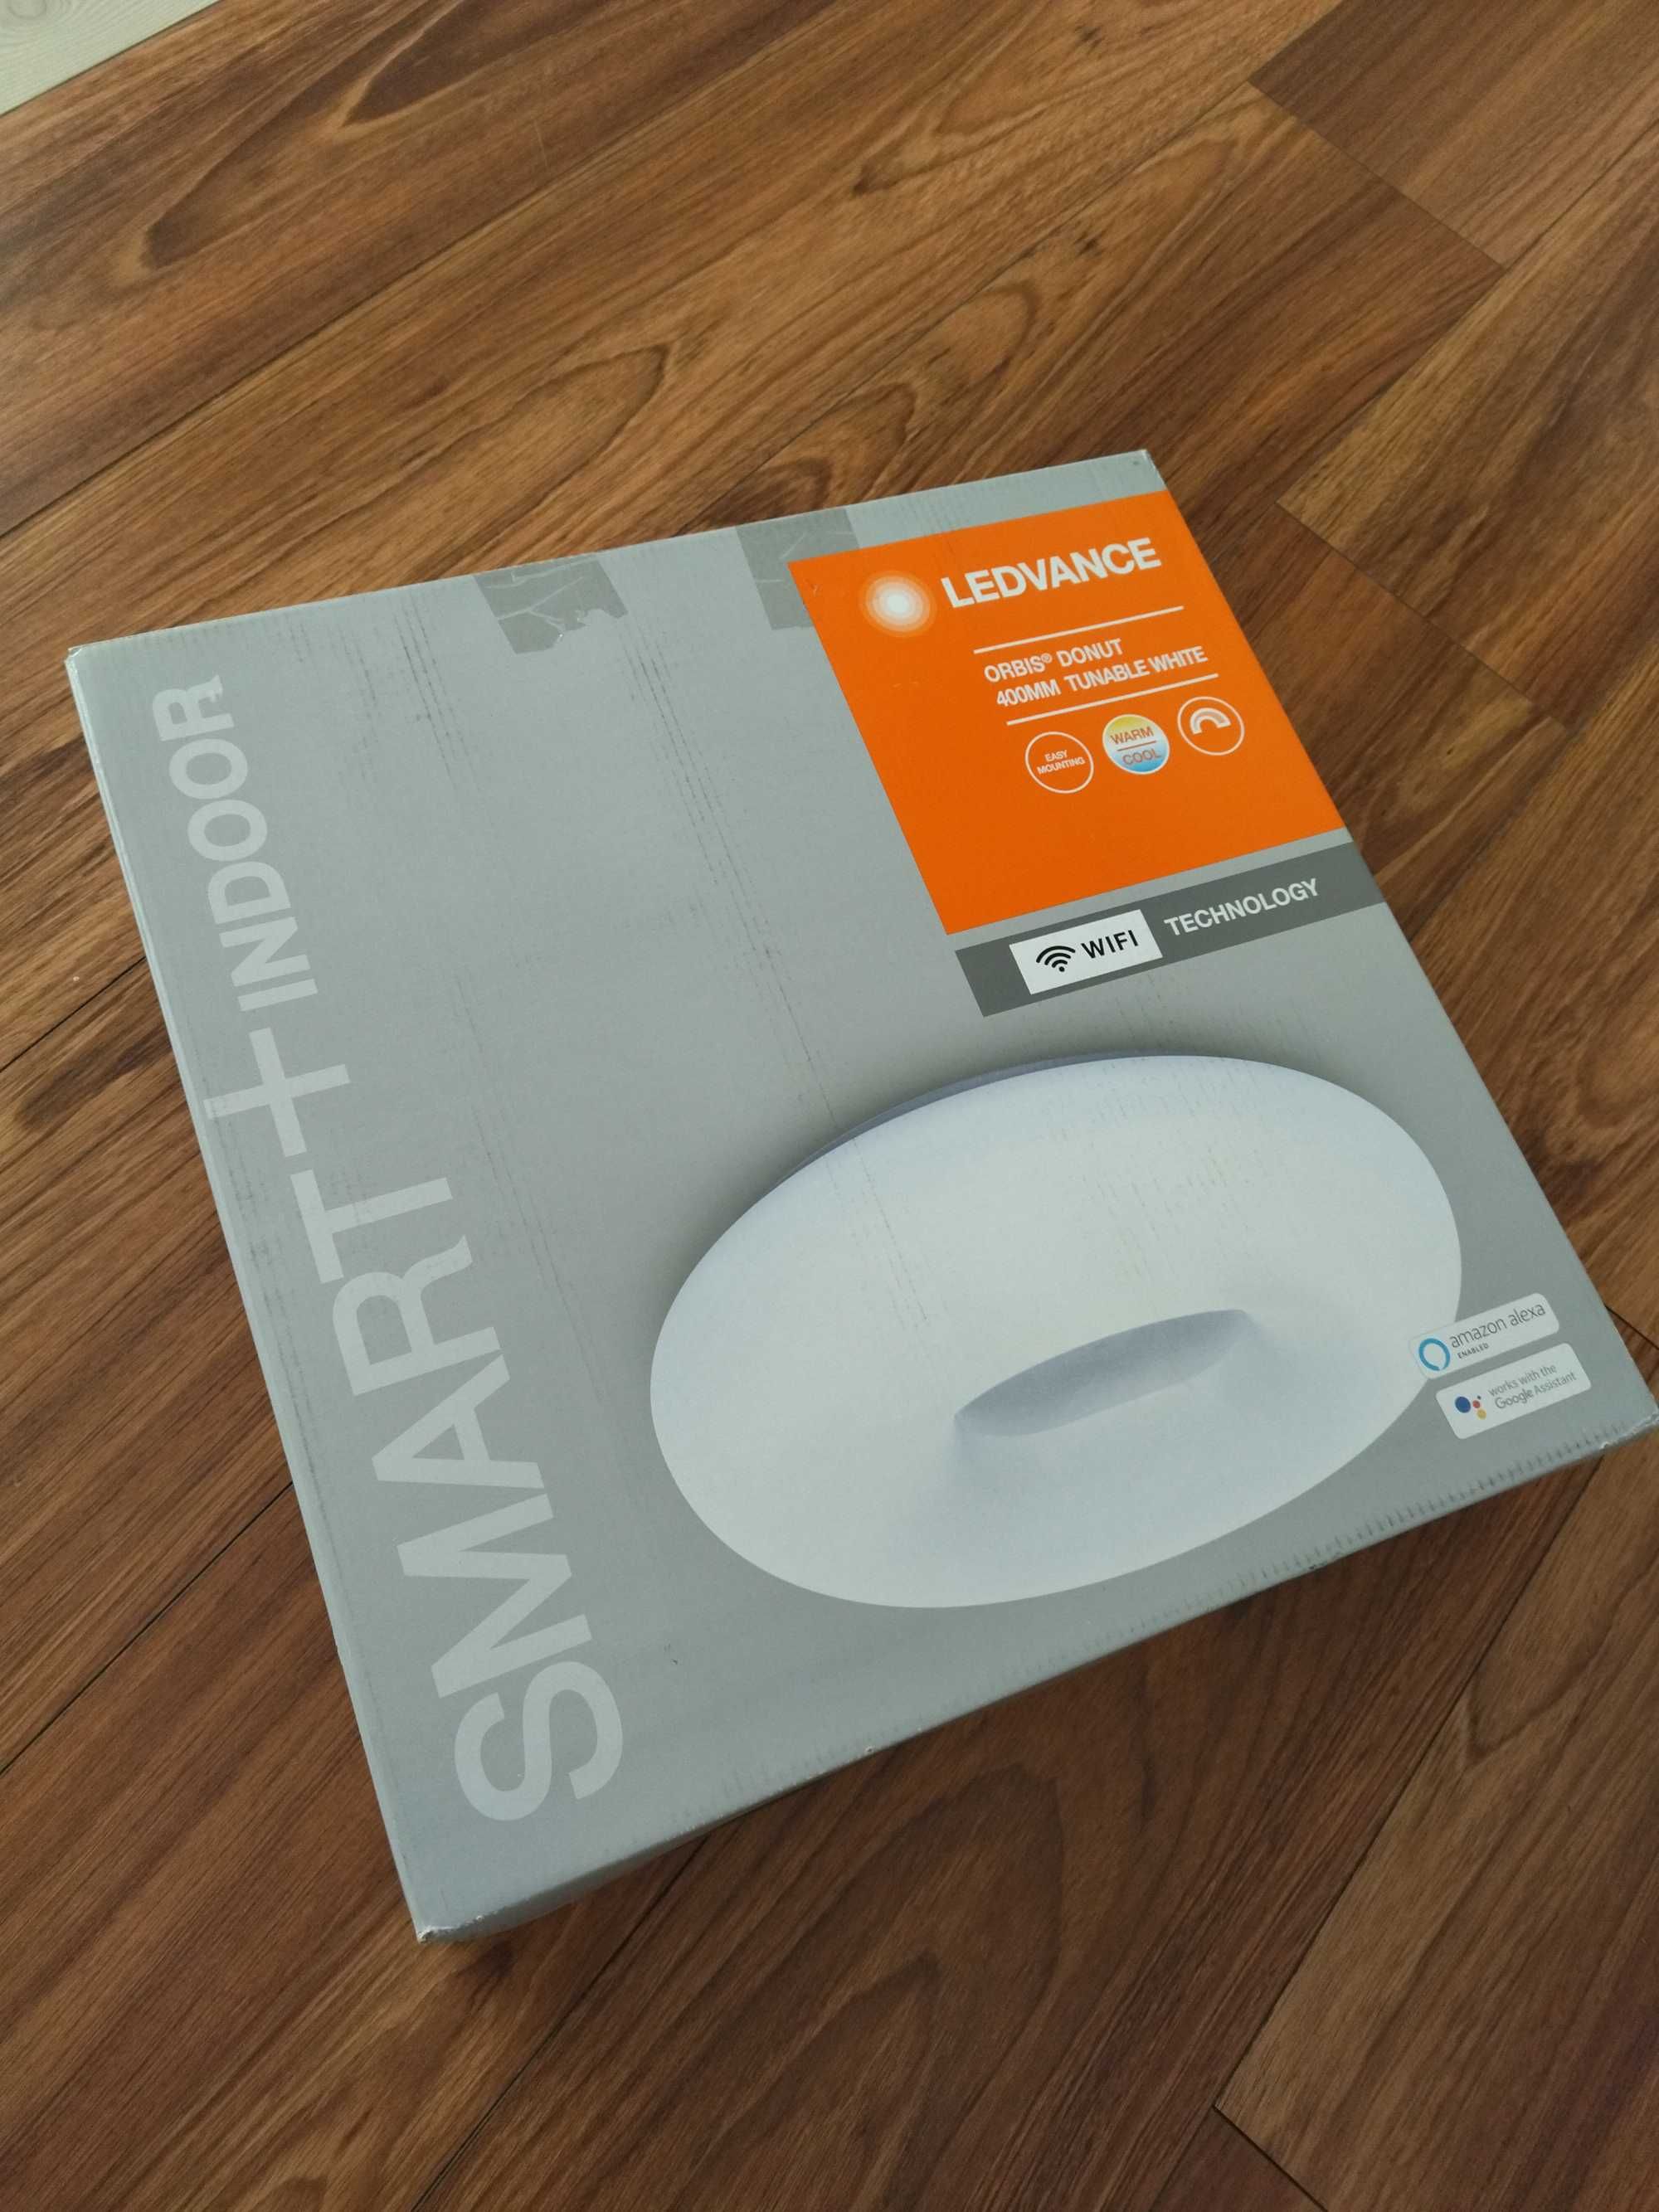 Ledvance - LED Димируема лампа SMART+Wifi Donut White 400mm